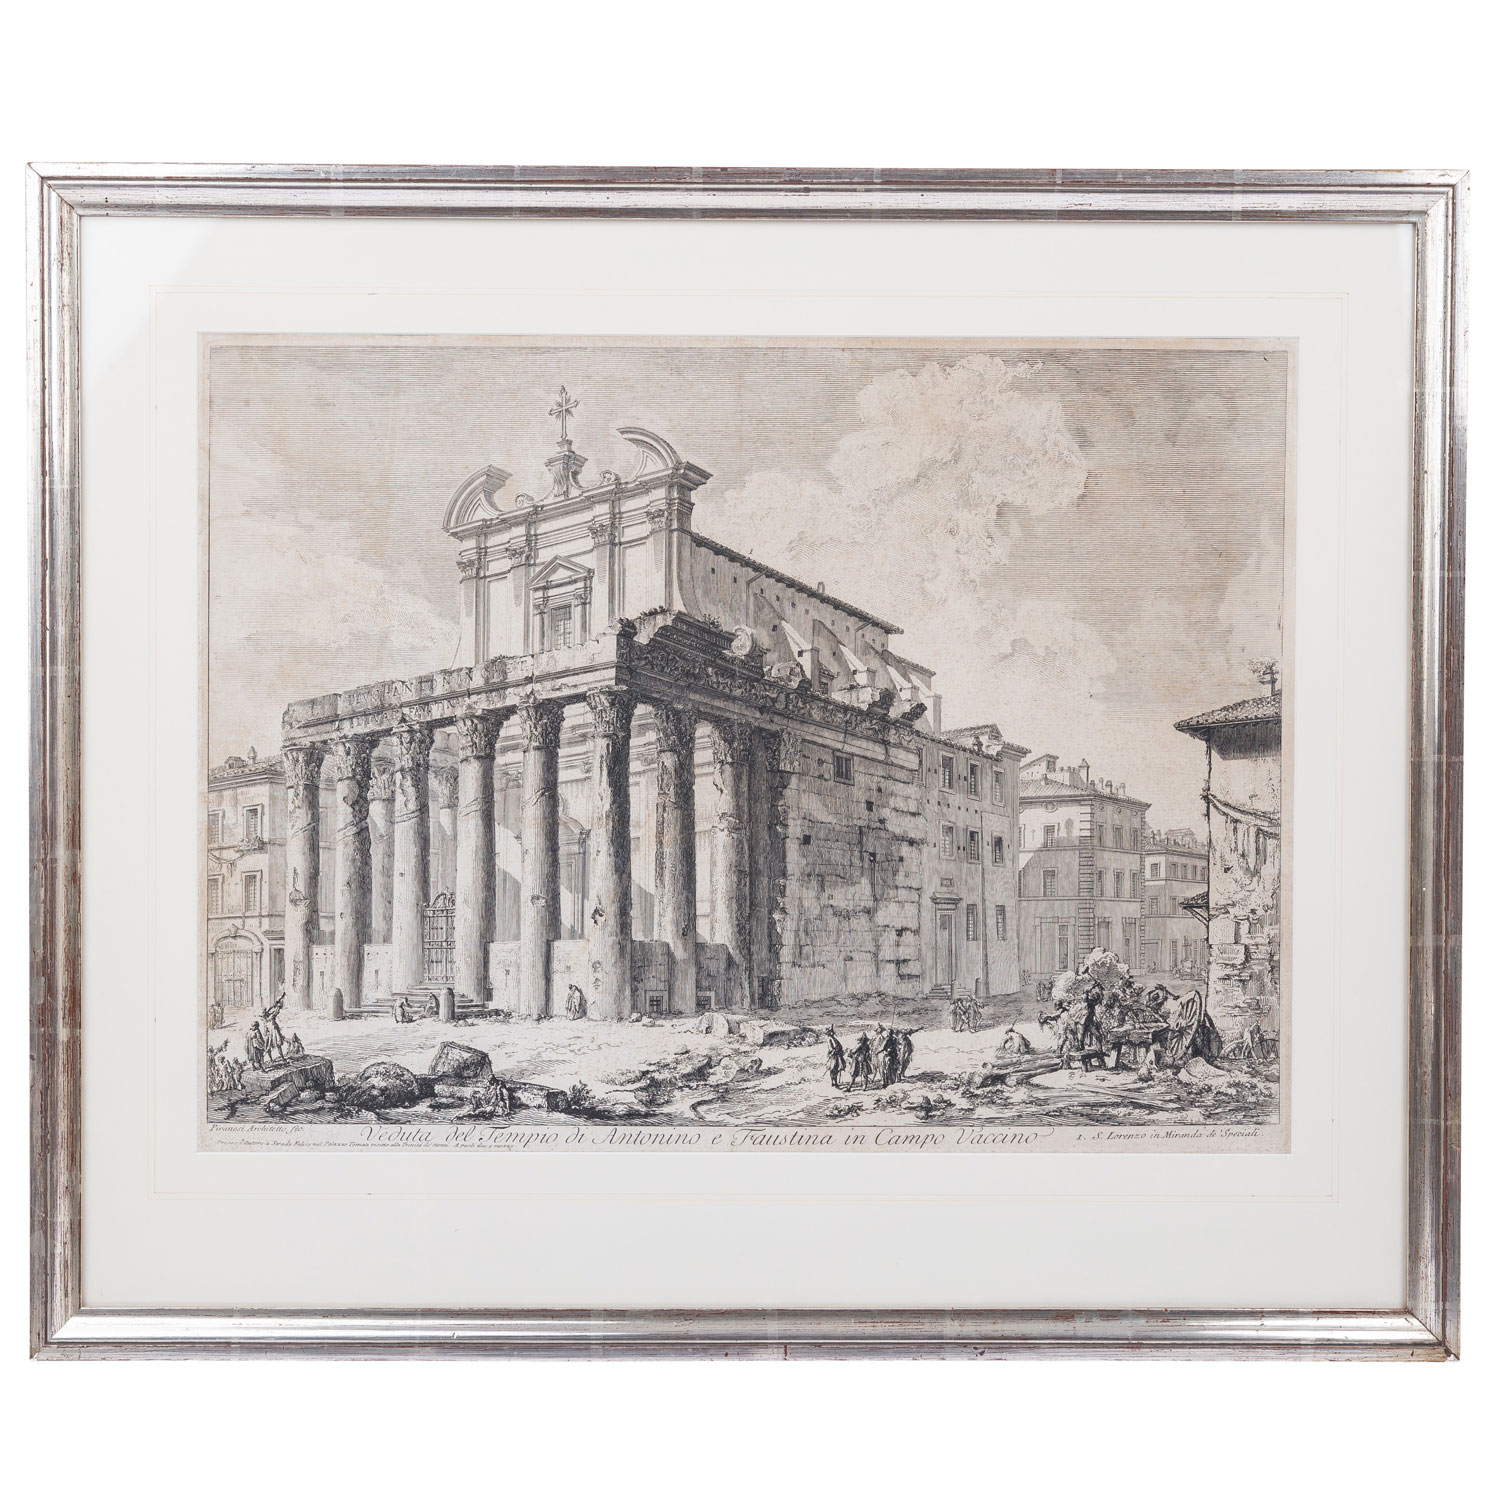 PIRANESI, GIOVANNI BATTISTA (1720-1778), "Veduta del Tempio di Antonino e Faustina in Campo Vaccino" - Image 2 of 7